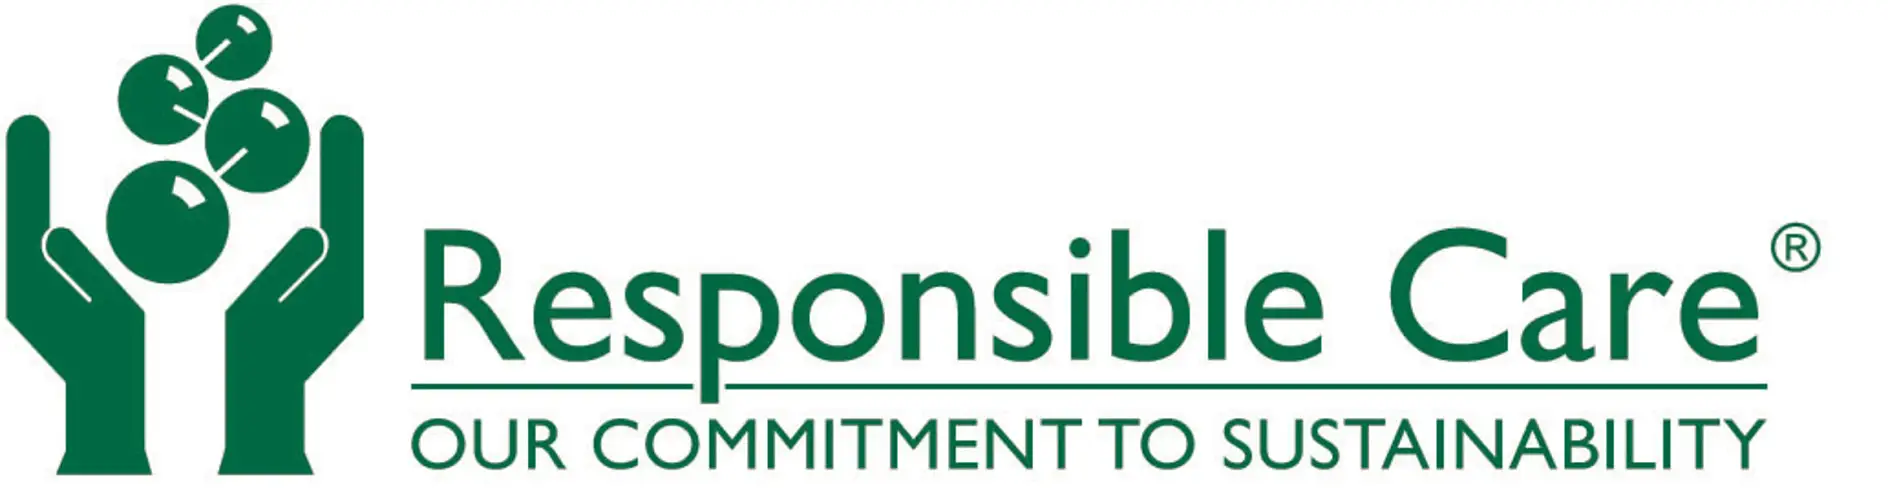 Uzņēmums tesa ir iniciatīvas “Responsible Care” dalībnieks